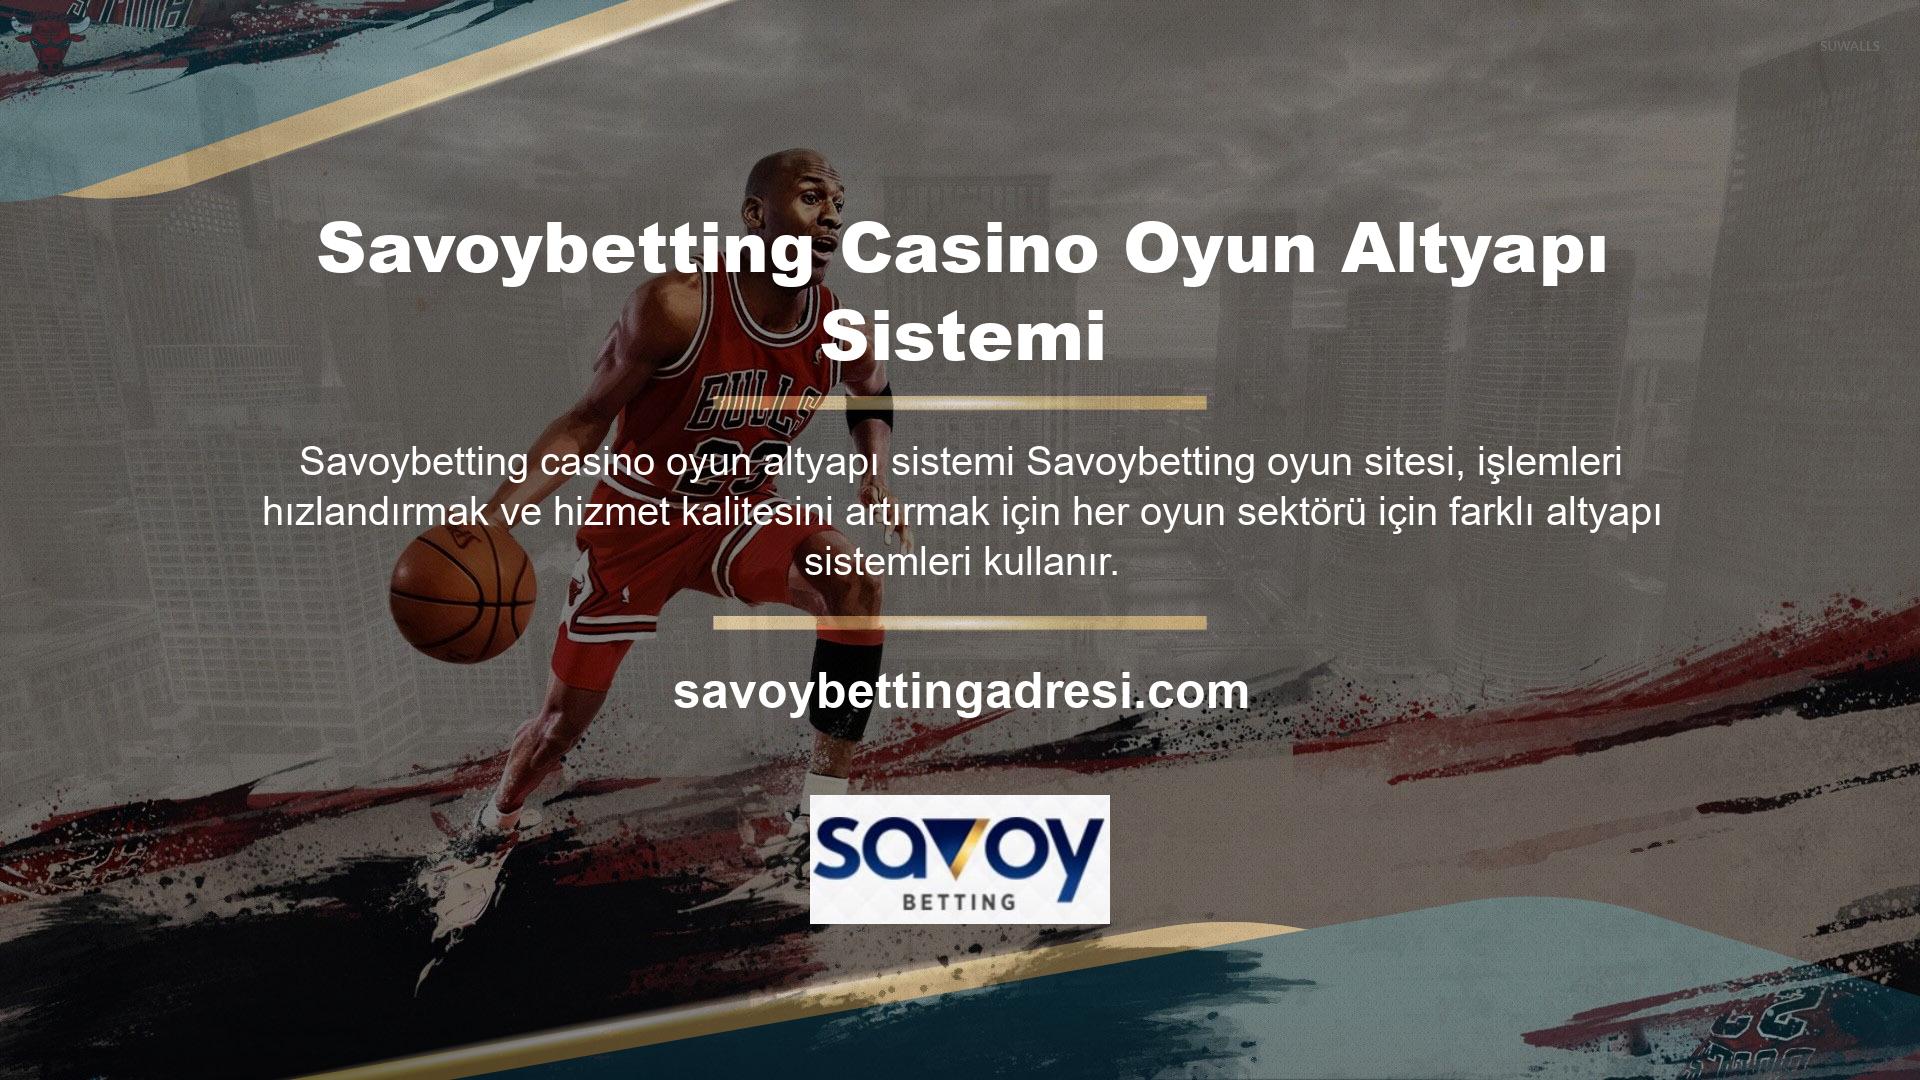 Savoybetting bahislerini araştıran herkes, casino oyunları alanında birçok oyun sağlayıcı olduğunu bilir